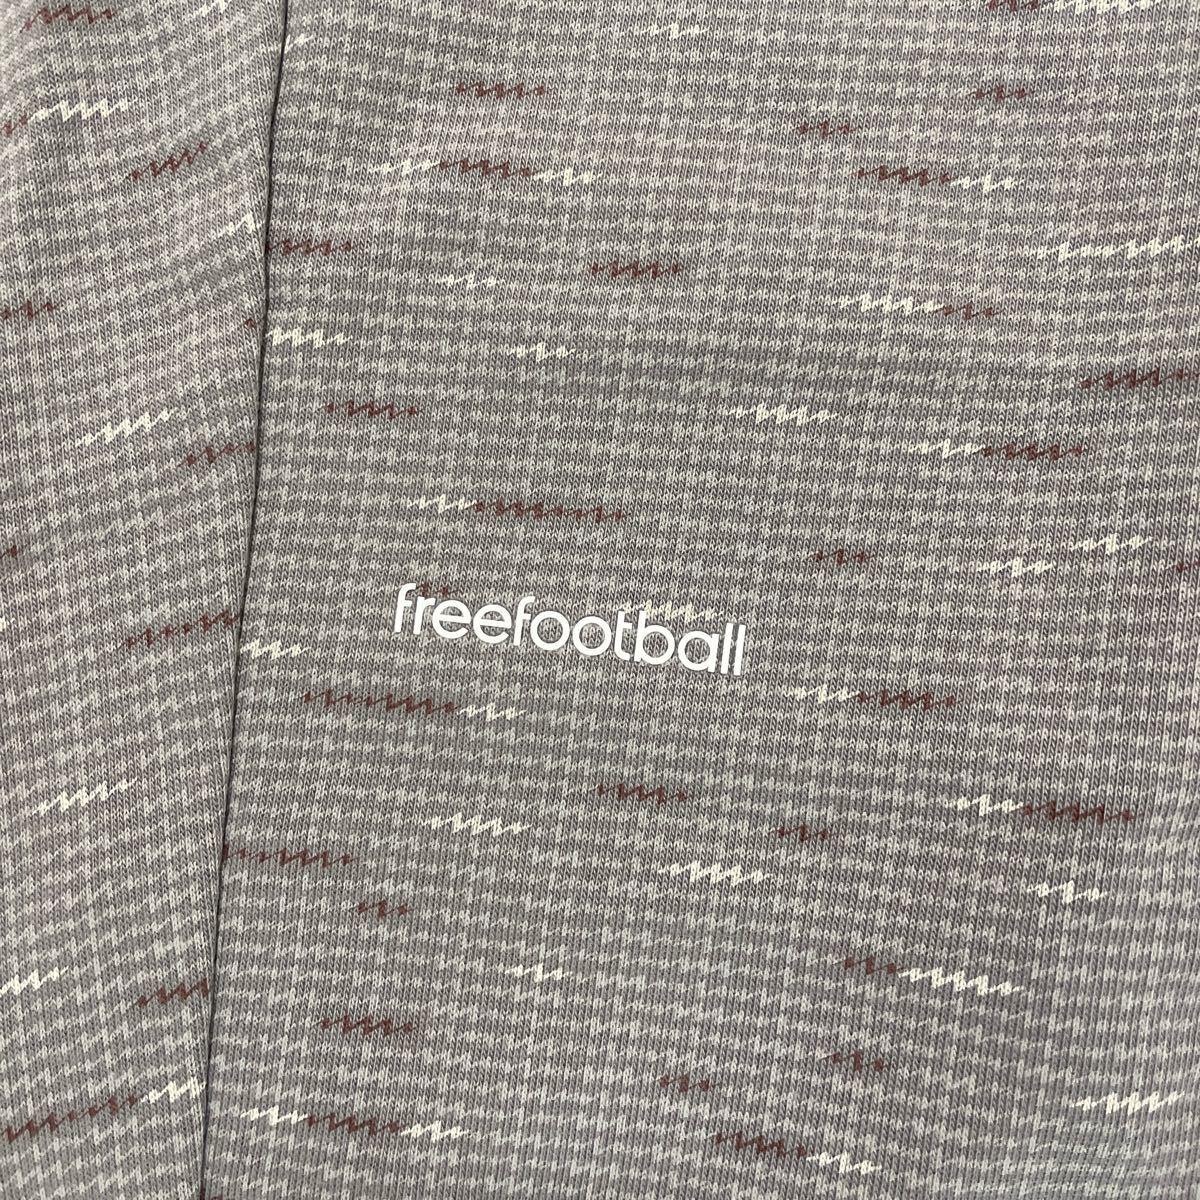 【未使用品】adidas スウェットパンツ freefootball